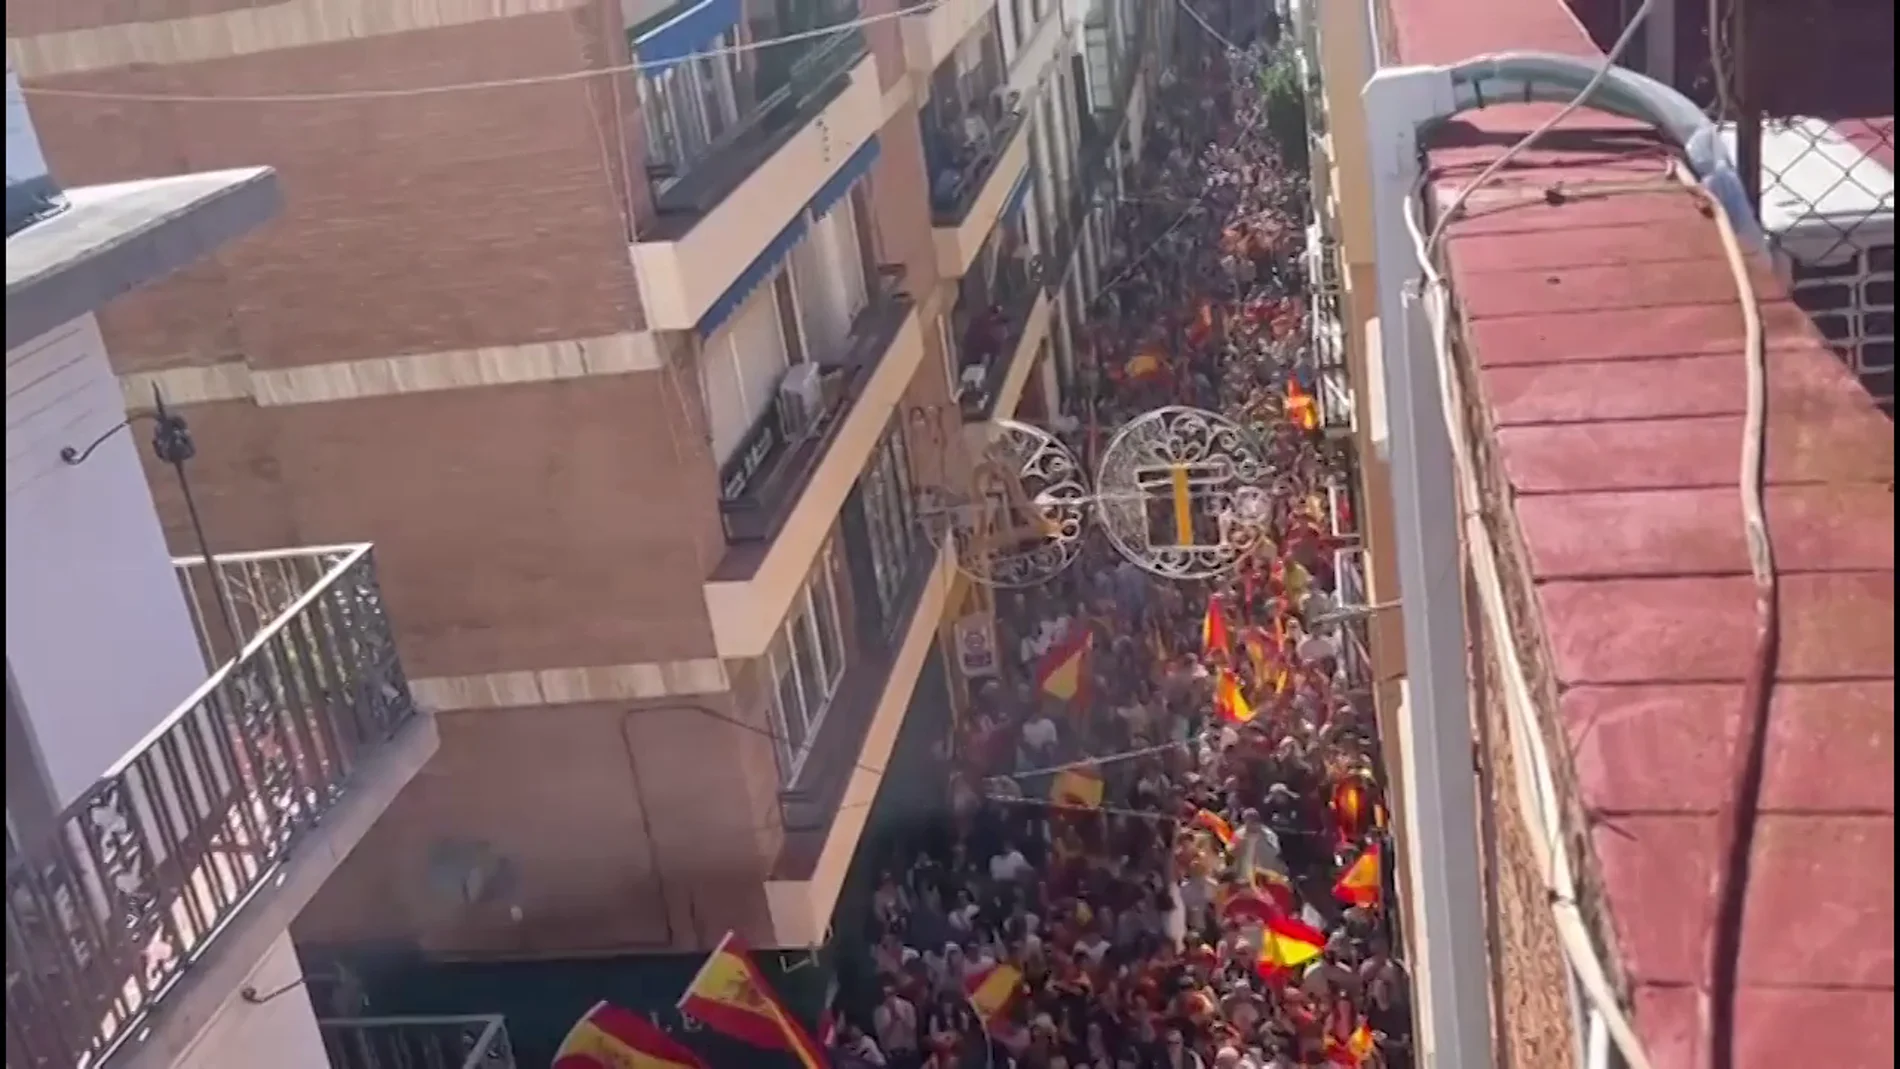 Miles de personas continúan la protesta en la sede del PSOE de Sevilla al grito de "Viva España"